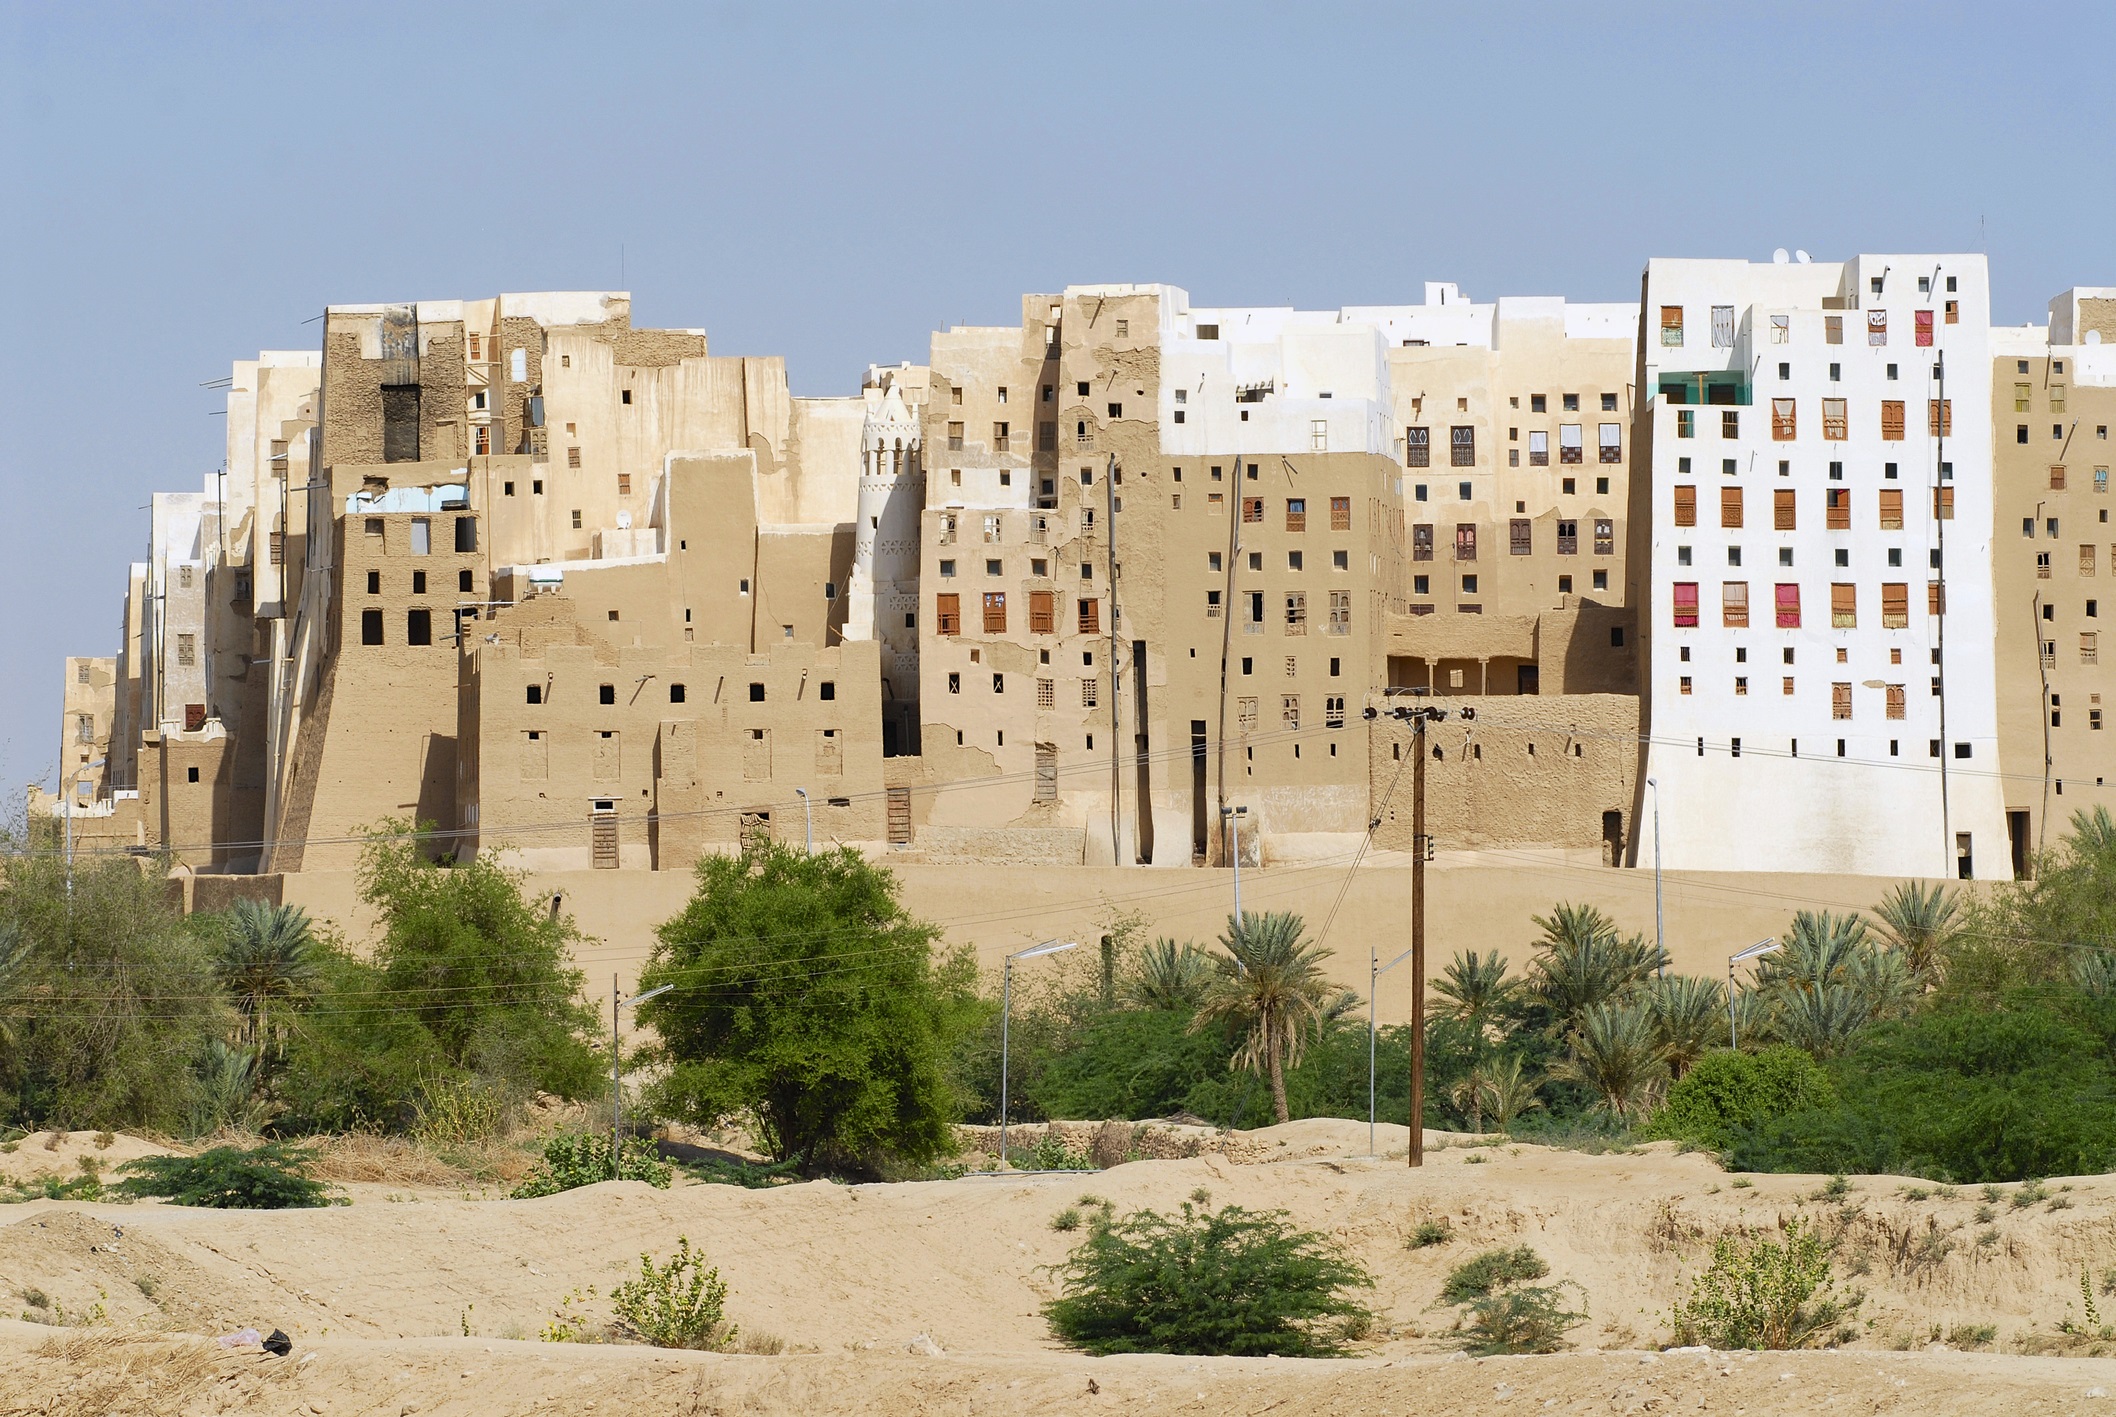 Група небостъргачи, направени от кал, се извисяват в пустинята, като демонстрация на способността на човечеството да се адаптира и към най-неблагоприятната околна среда.